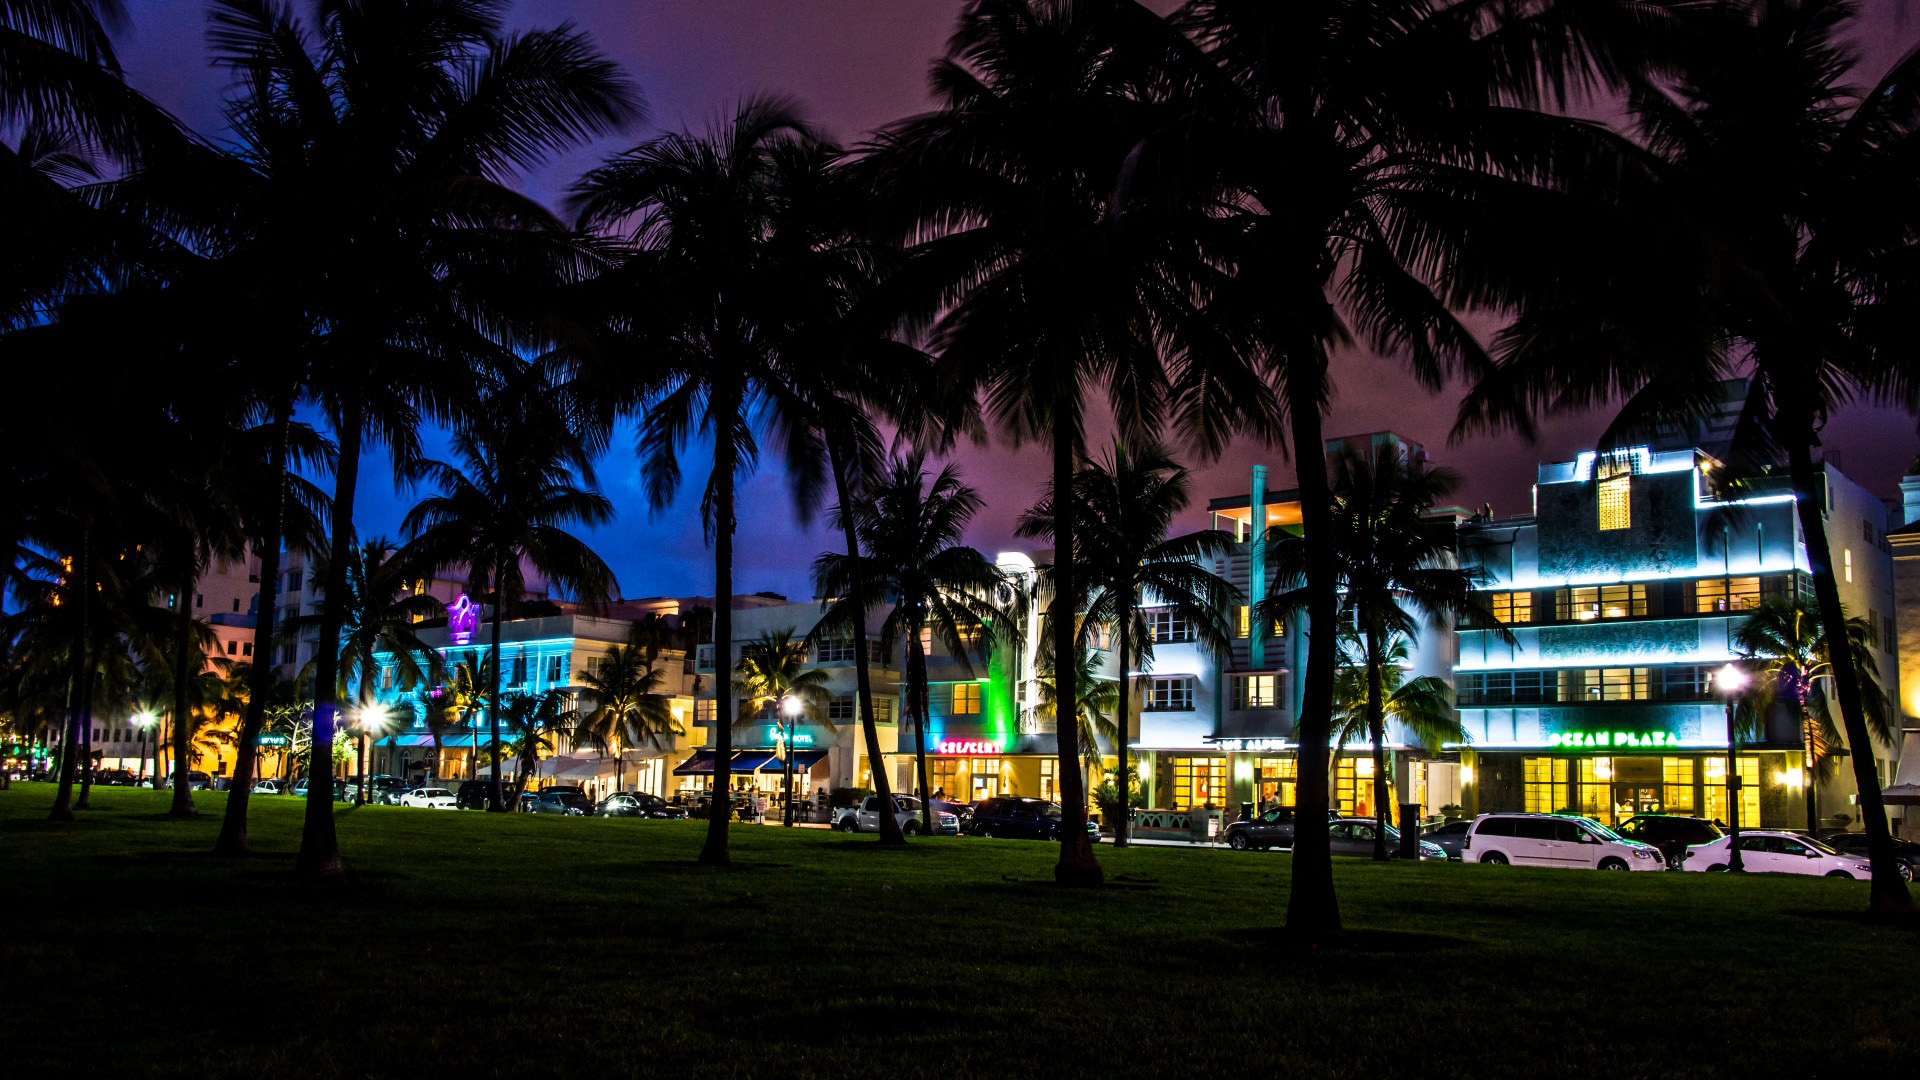 佛罗里达州,迈阿密,南海滩,夜间城市风景桌面壁纸